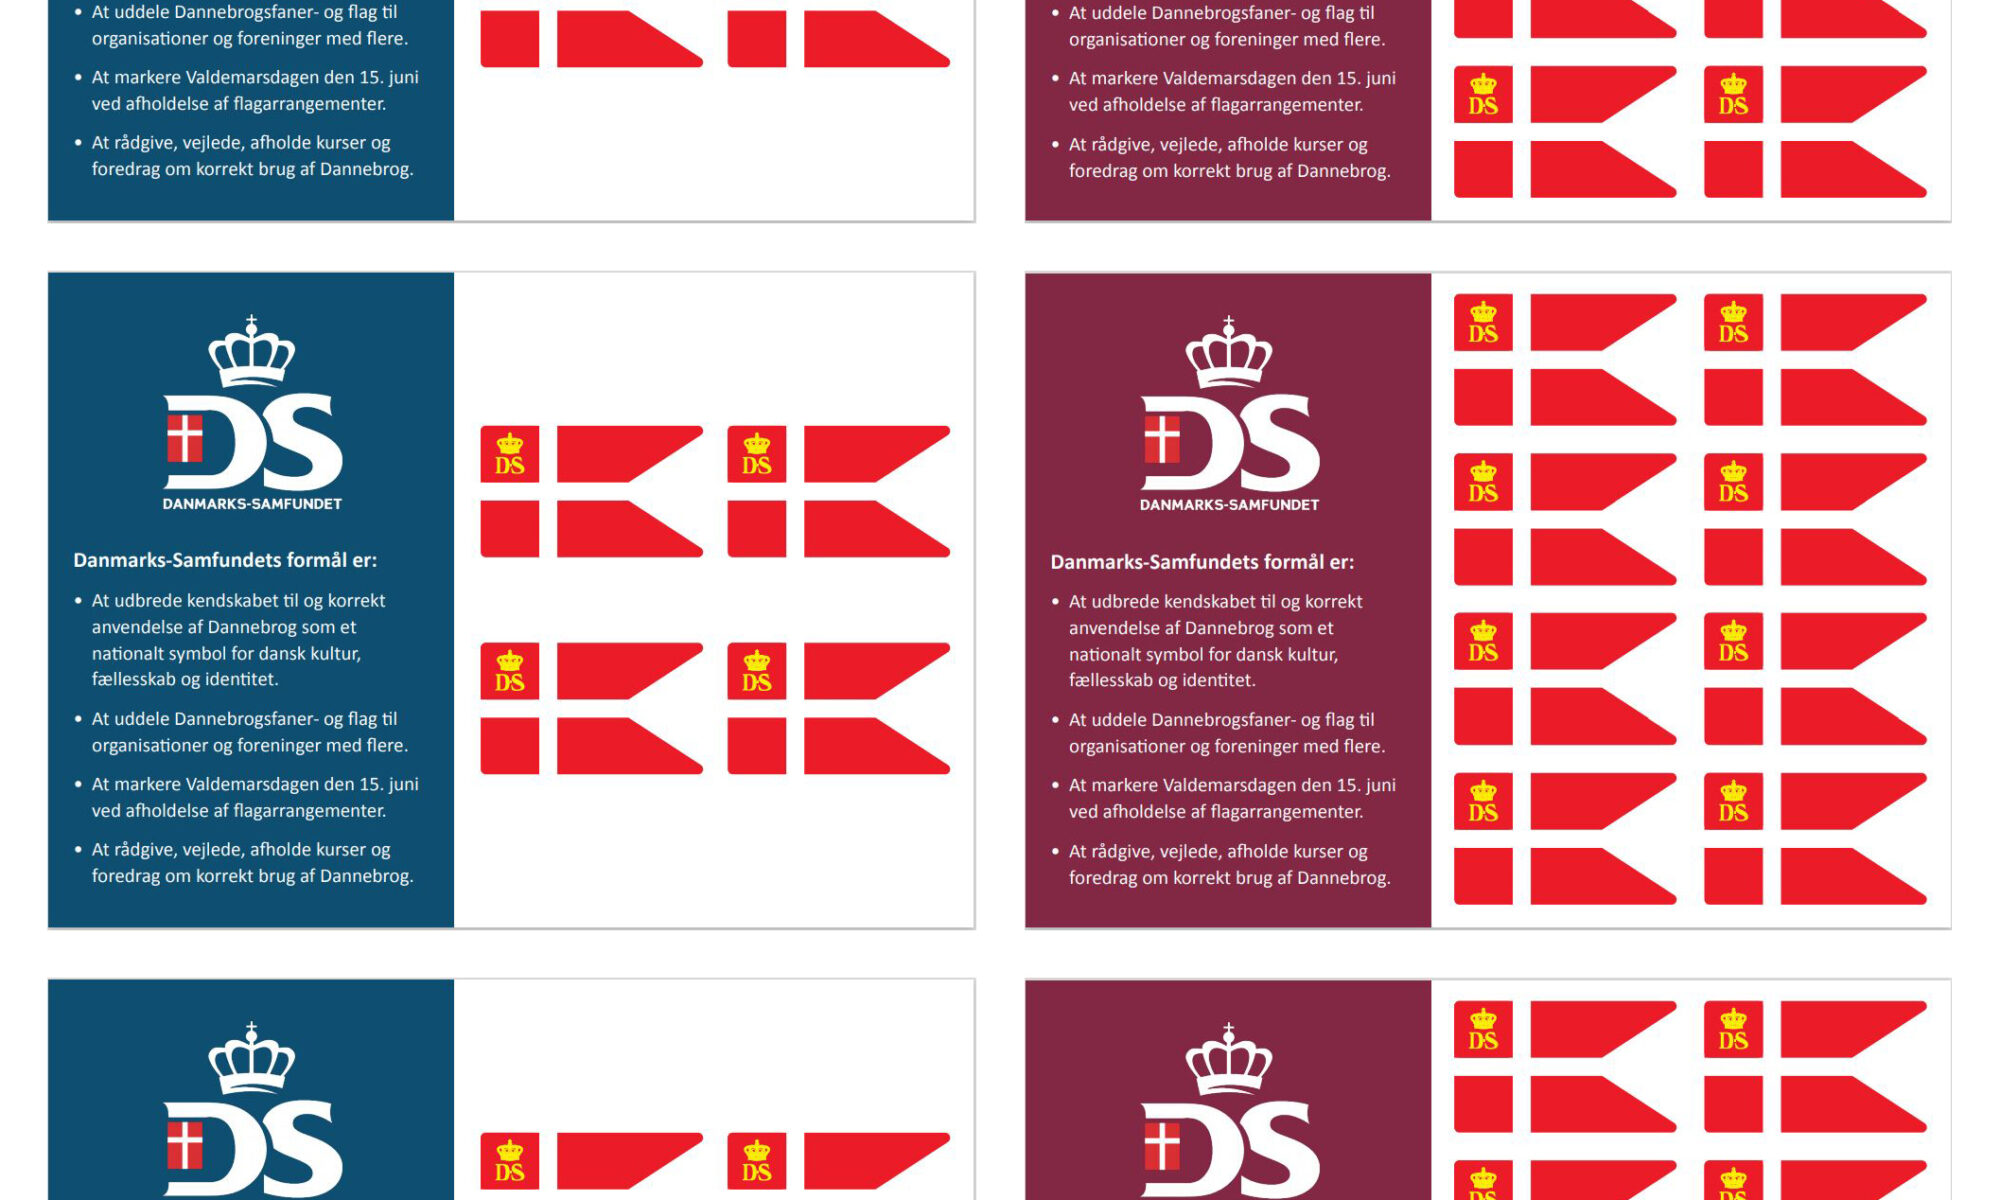 3 x Postkort med 4 Valdemarsflag + 3 x Postkort med 8 Valdemarsflag